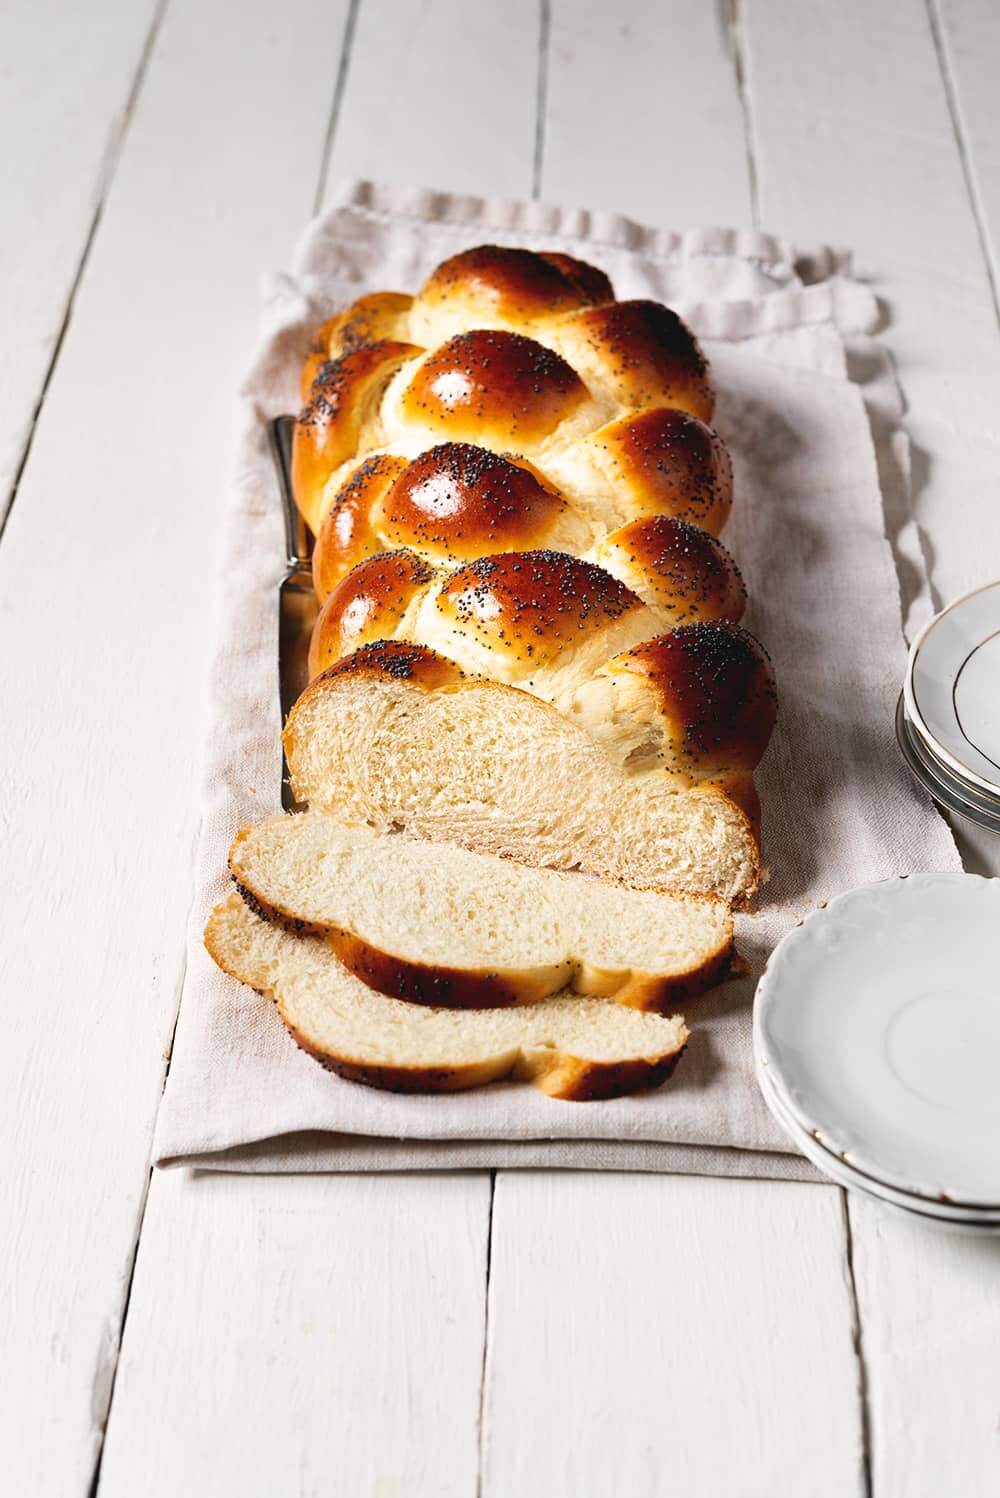 En un paño de cocina blanca está puesto el pan judío cortado en rodajas. Se ve el pan esponjoso.